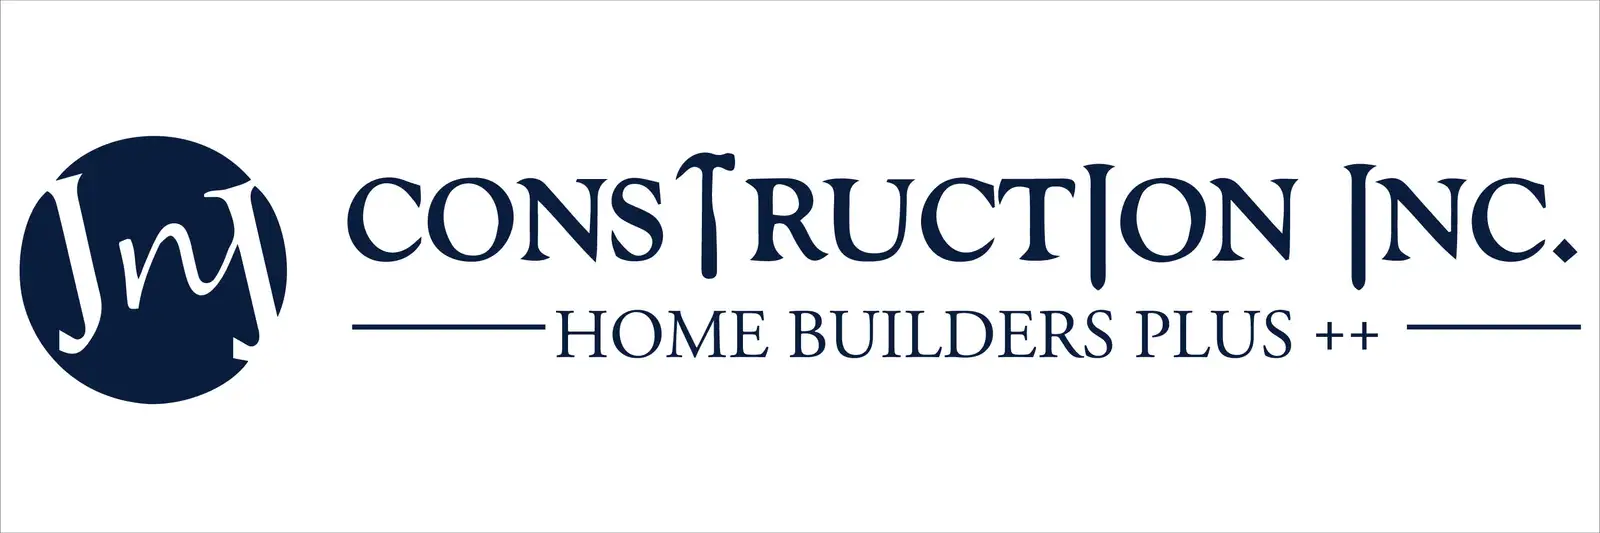 Construction Home Builders Plus logo